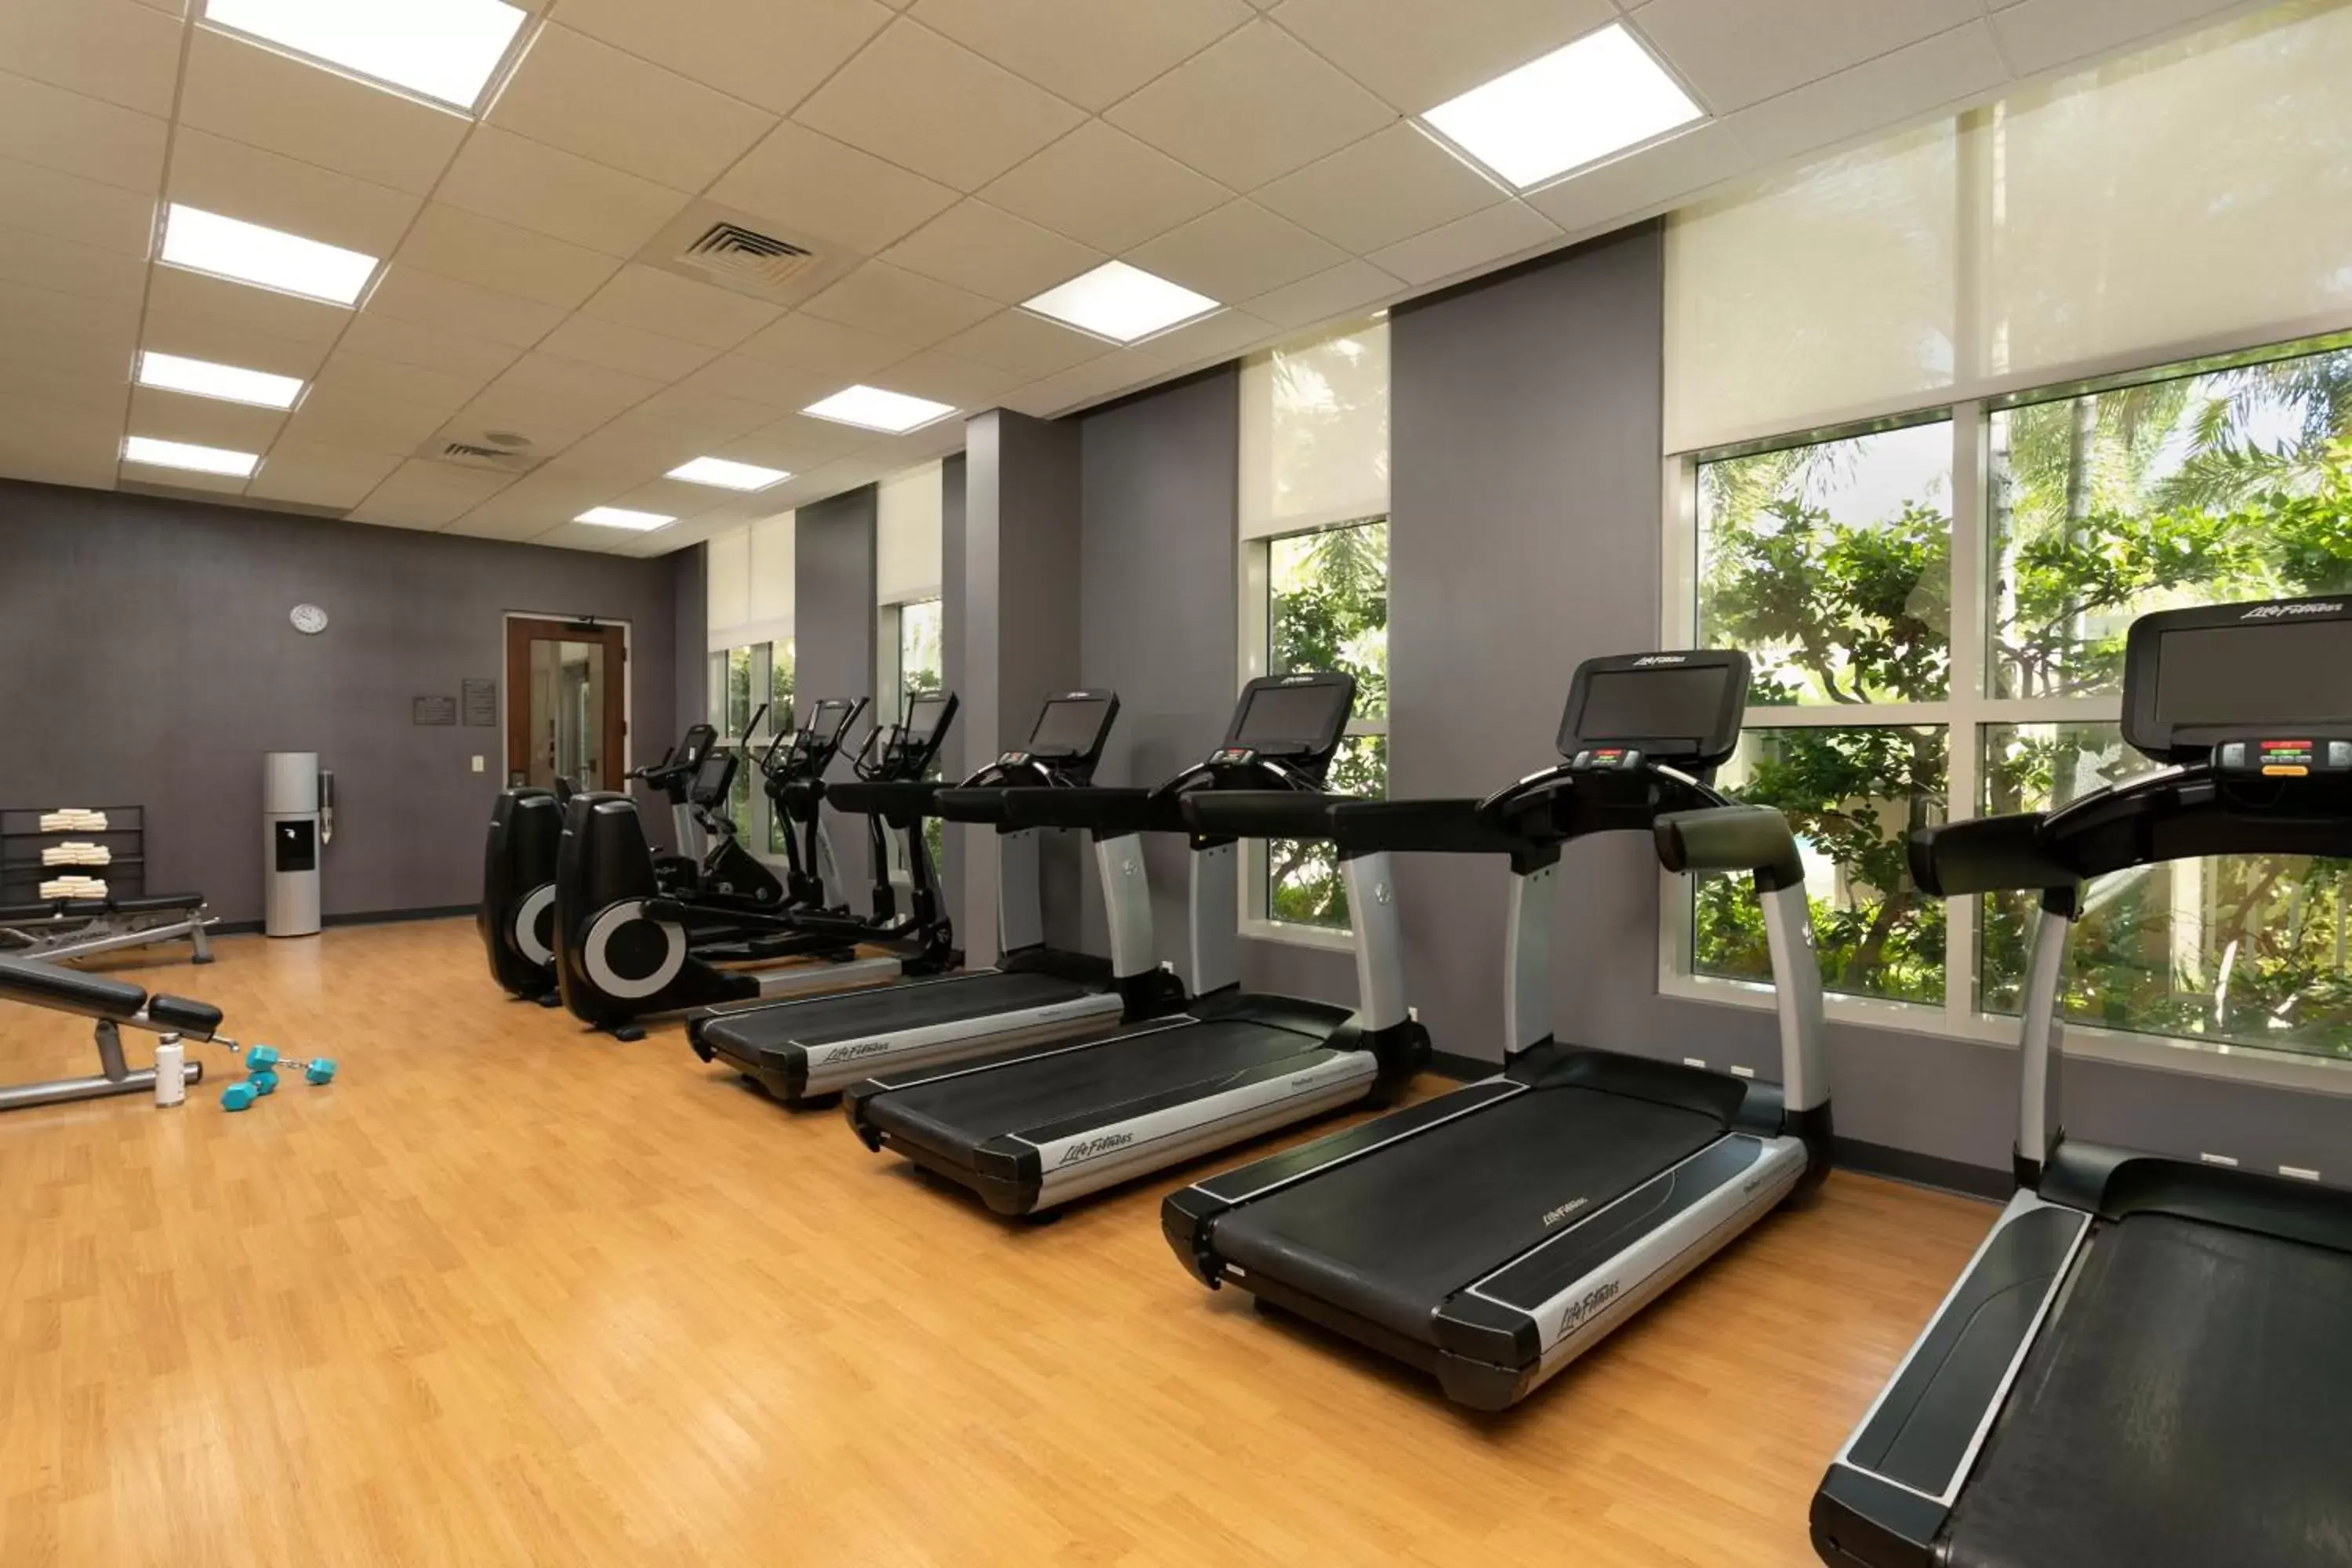 Fitness centre/facilities, Fitness Center/Facilities in Hyatt House San Juan